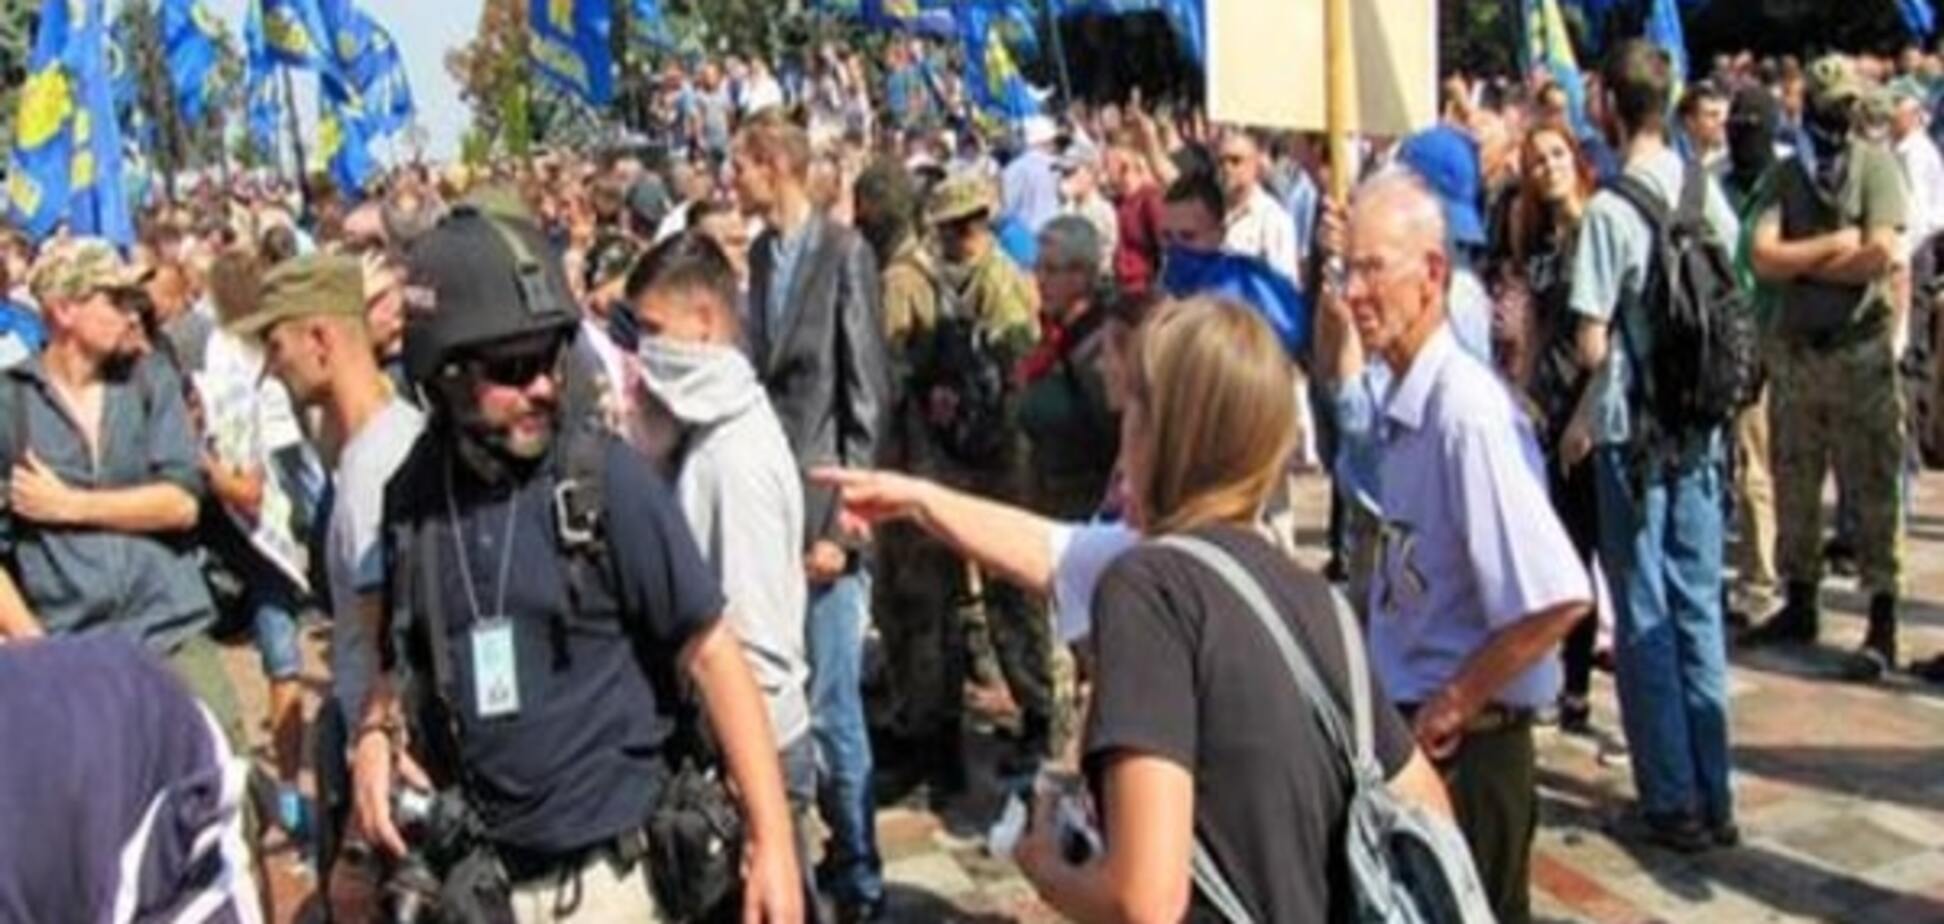 Чем грозит Украине провал конституционной реформы